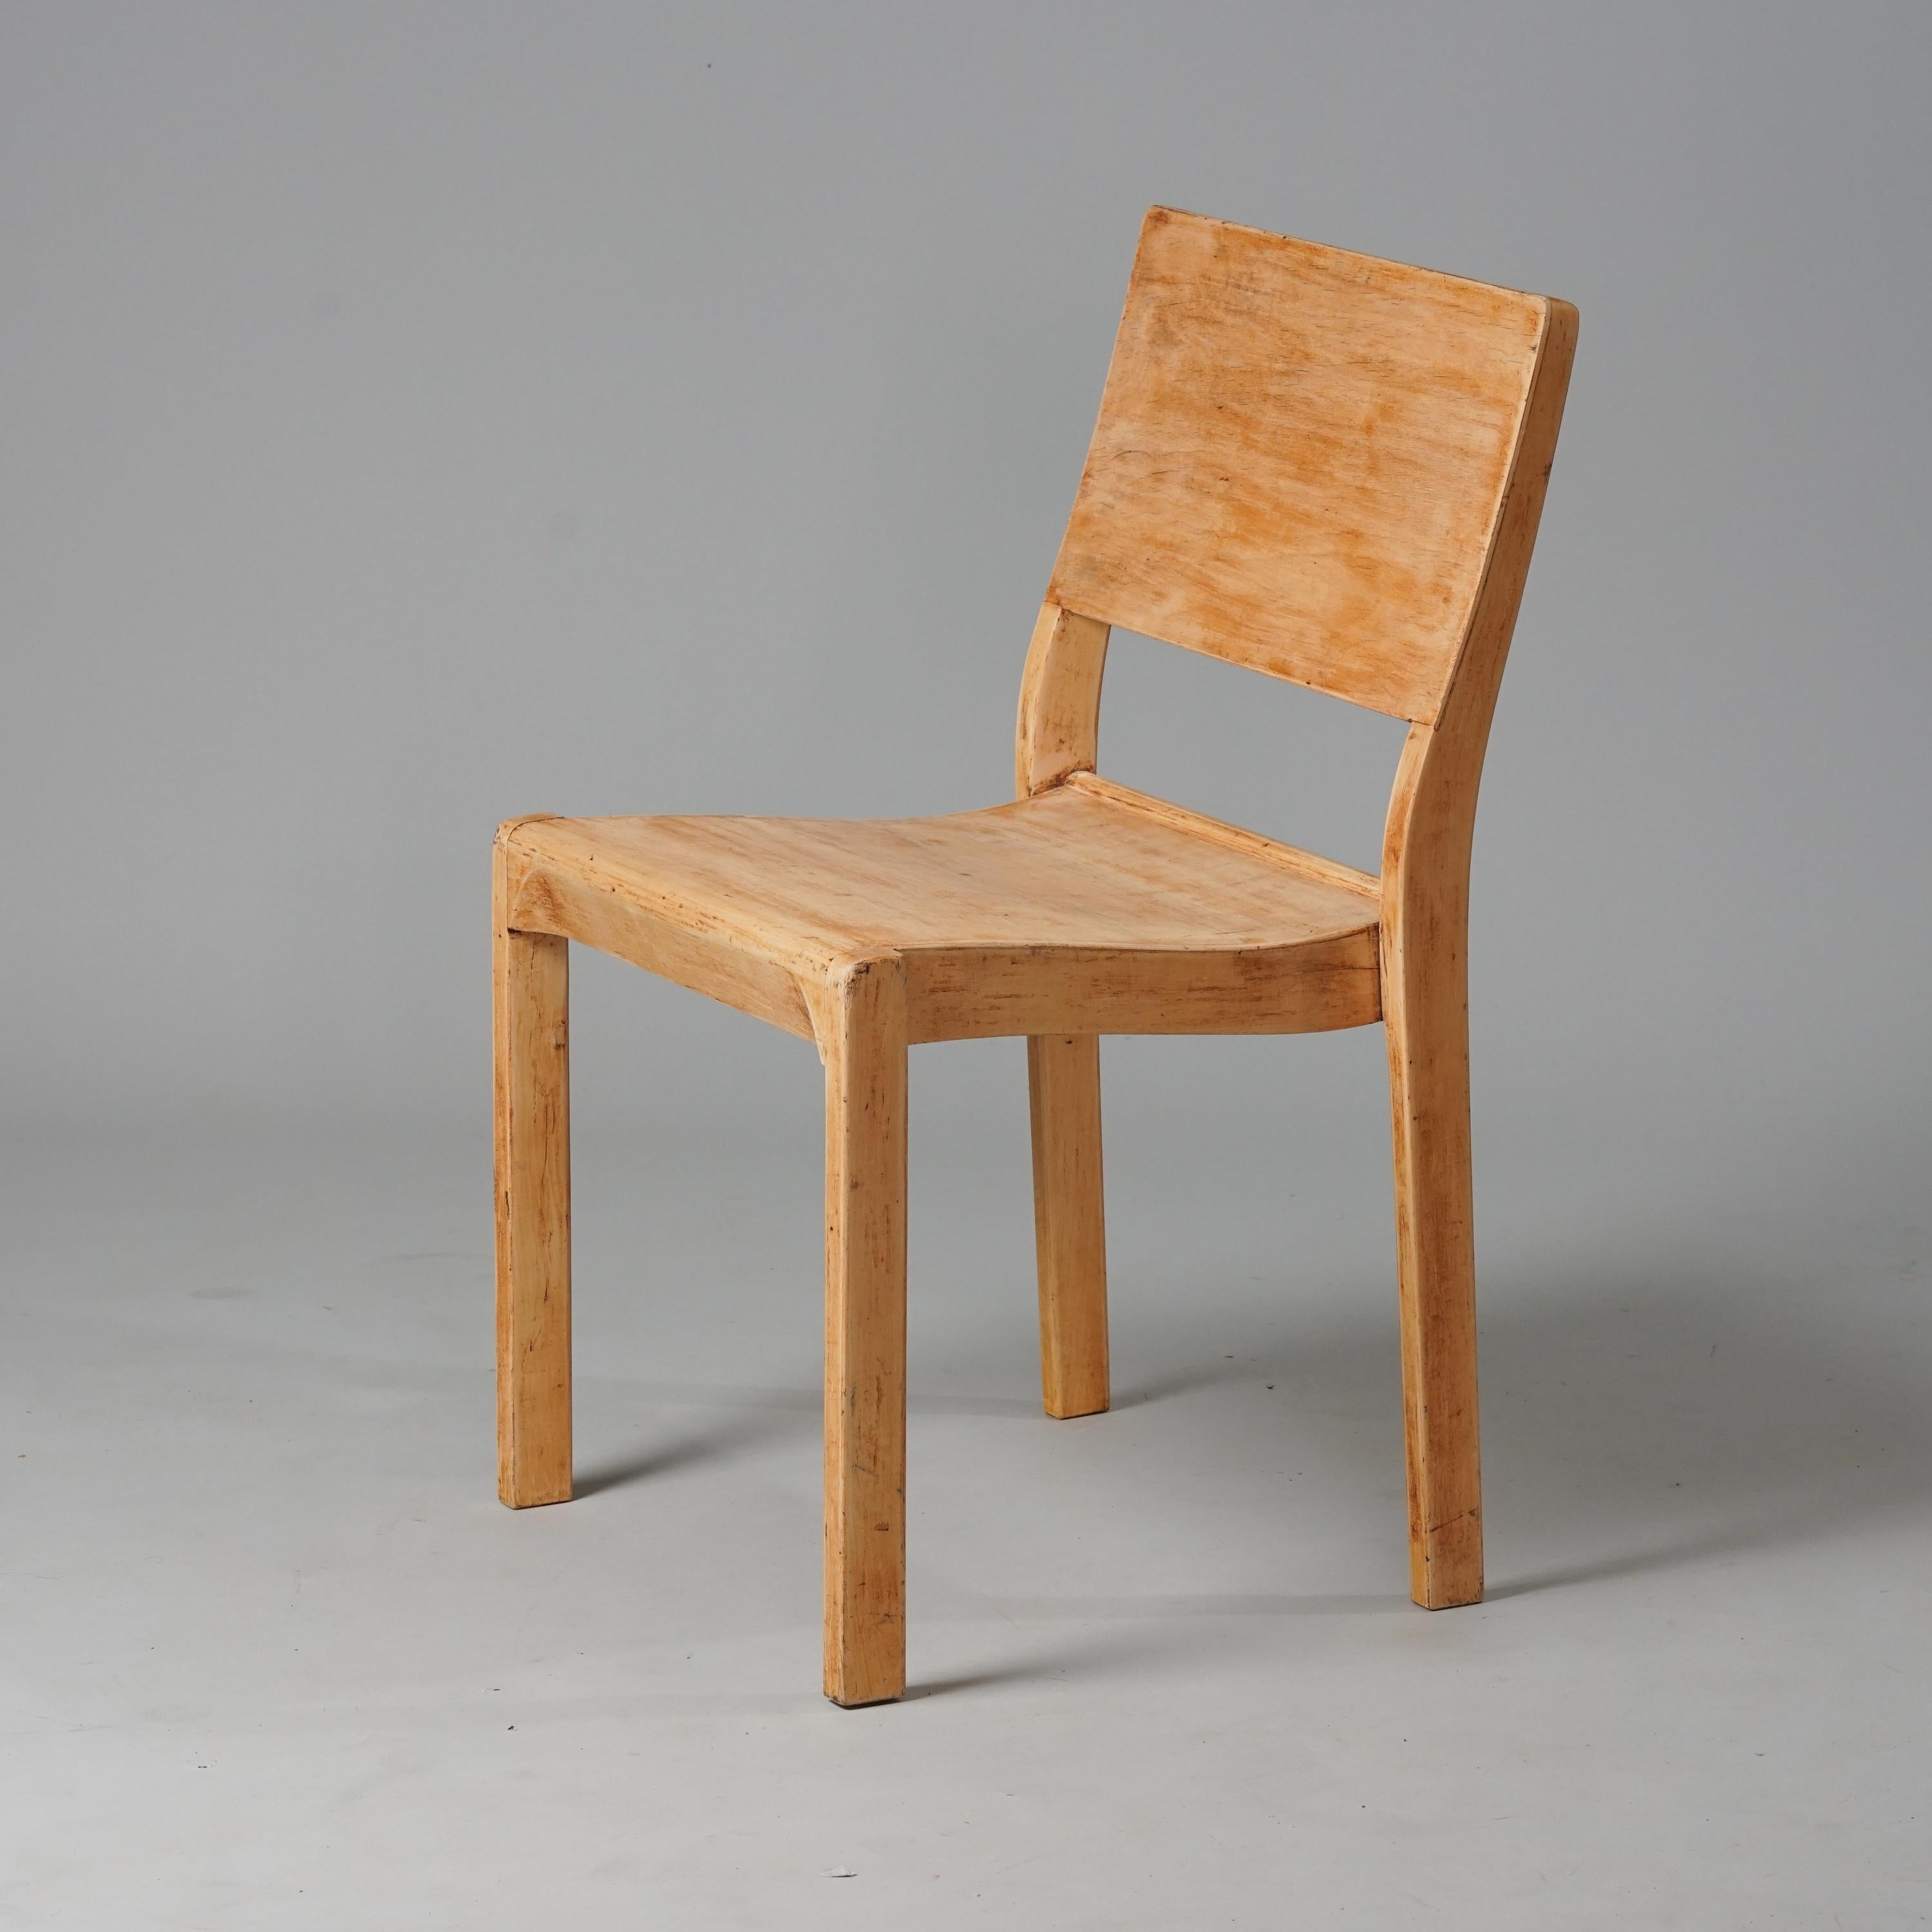 Première chaise modèle 611, conçue par Alvar Aalto, fabriquée par Oy Huonekalu- ja Rakennustyötehdas Ab, années 1930. Bouleau patiné. Surface naturelle. Bon état vintage, patine d'usage. 

Alvar Aalto (1898-1976) est probablement l'architecte et le